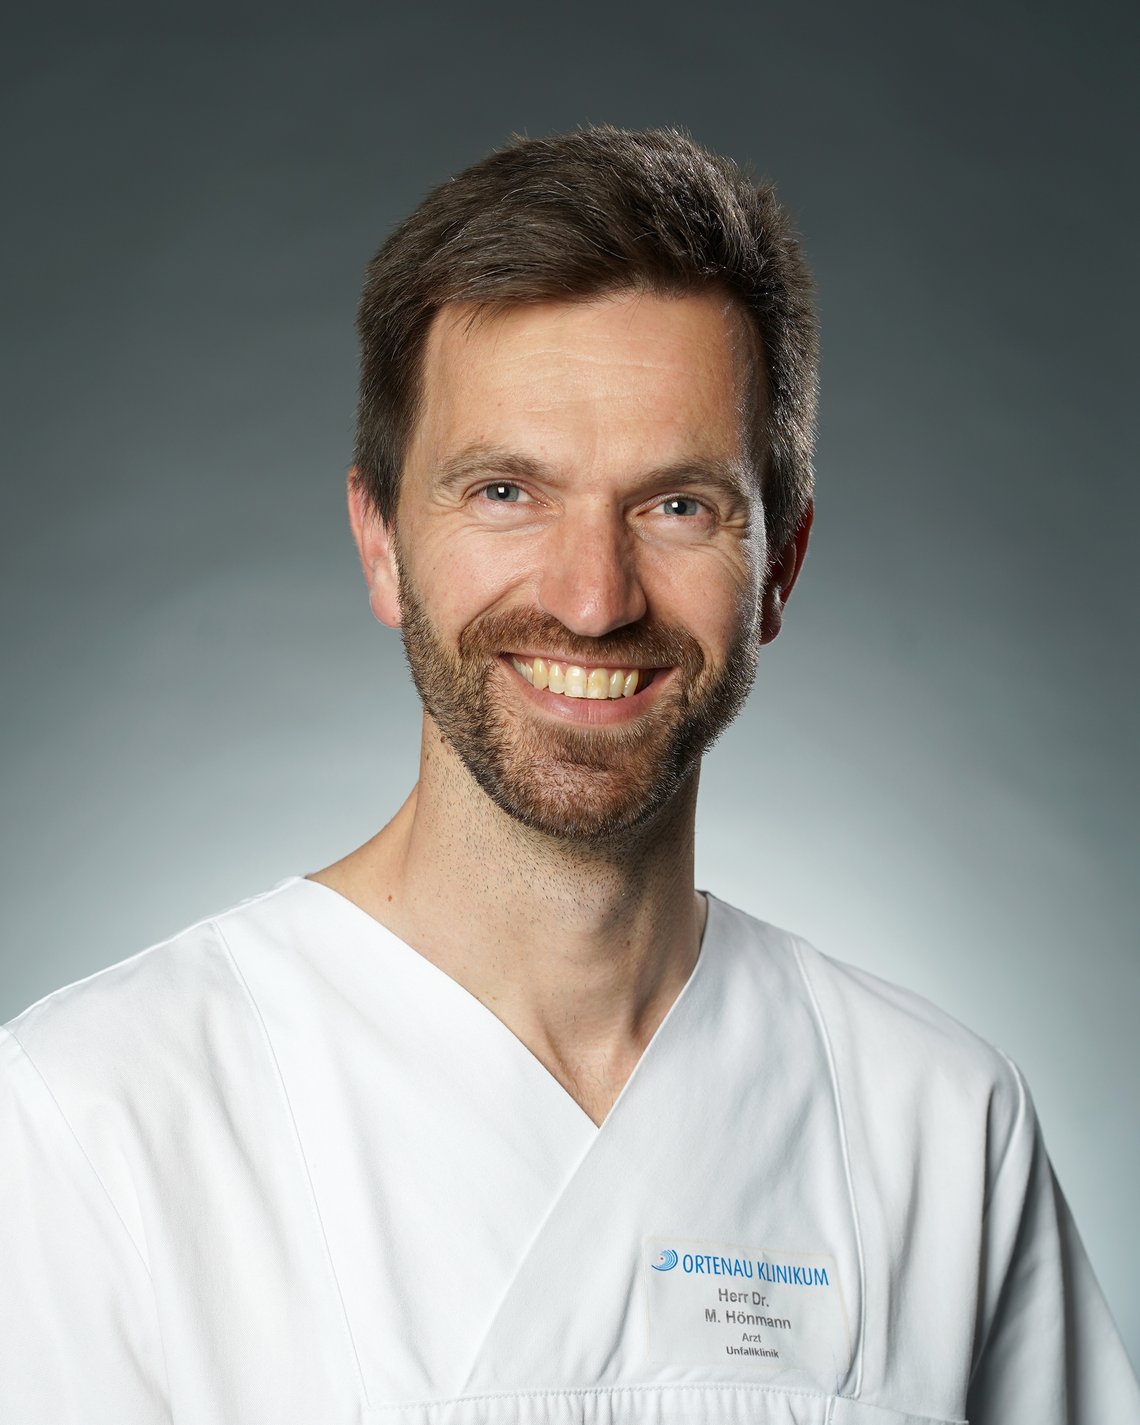 Porträt: Dr. Matthias Hönmann